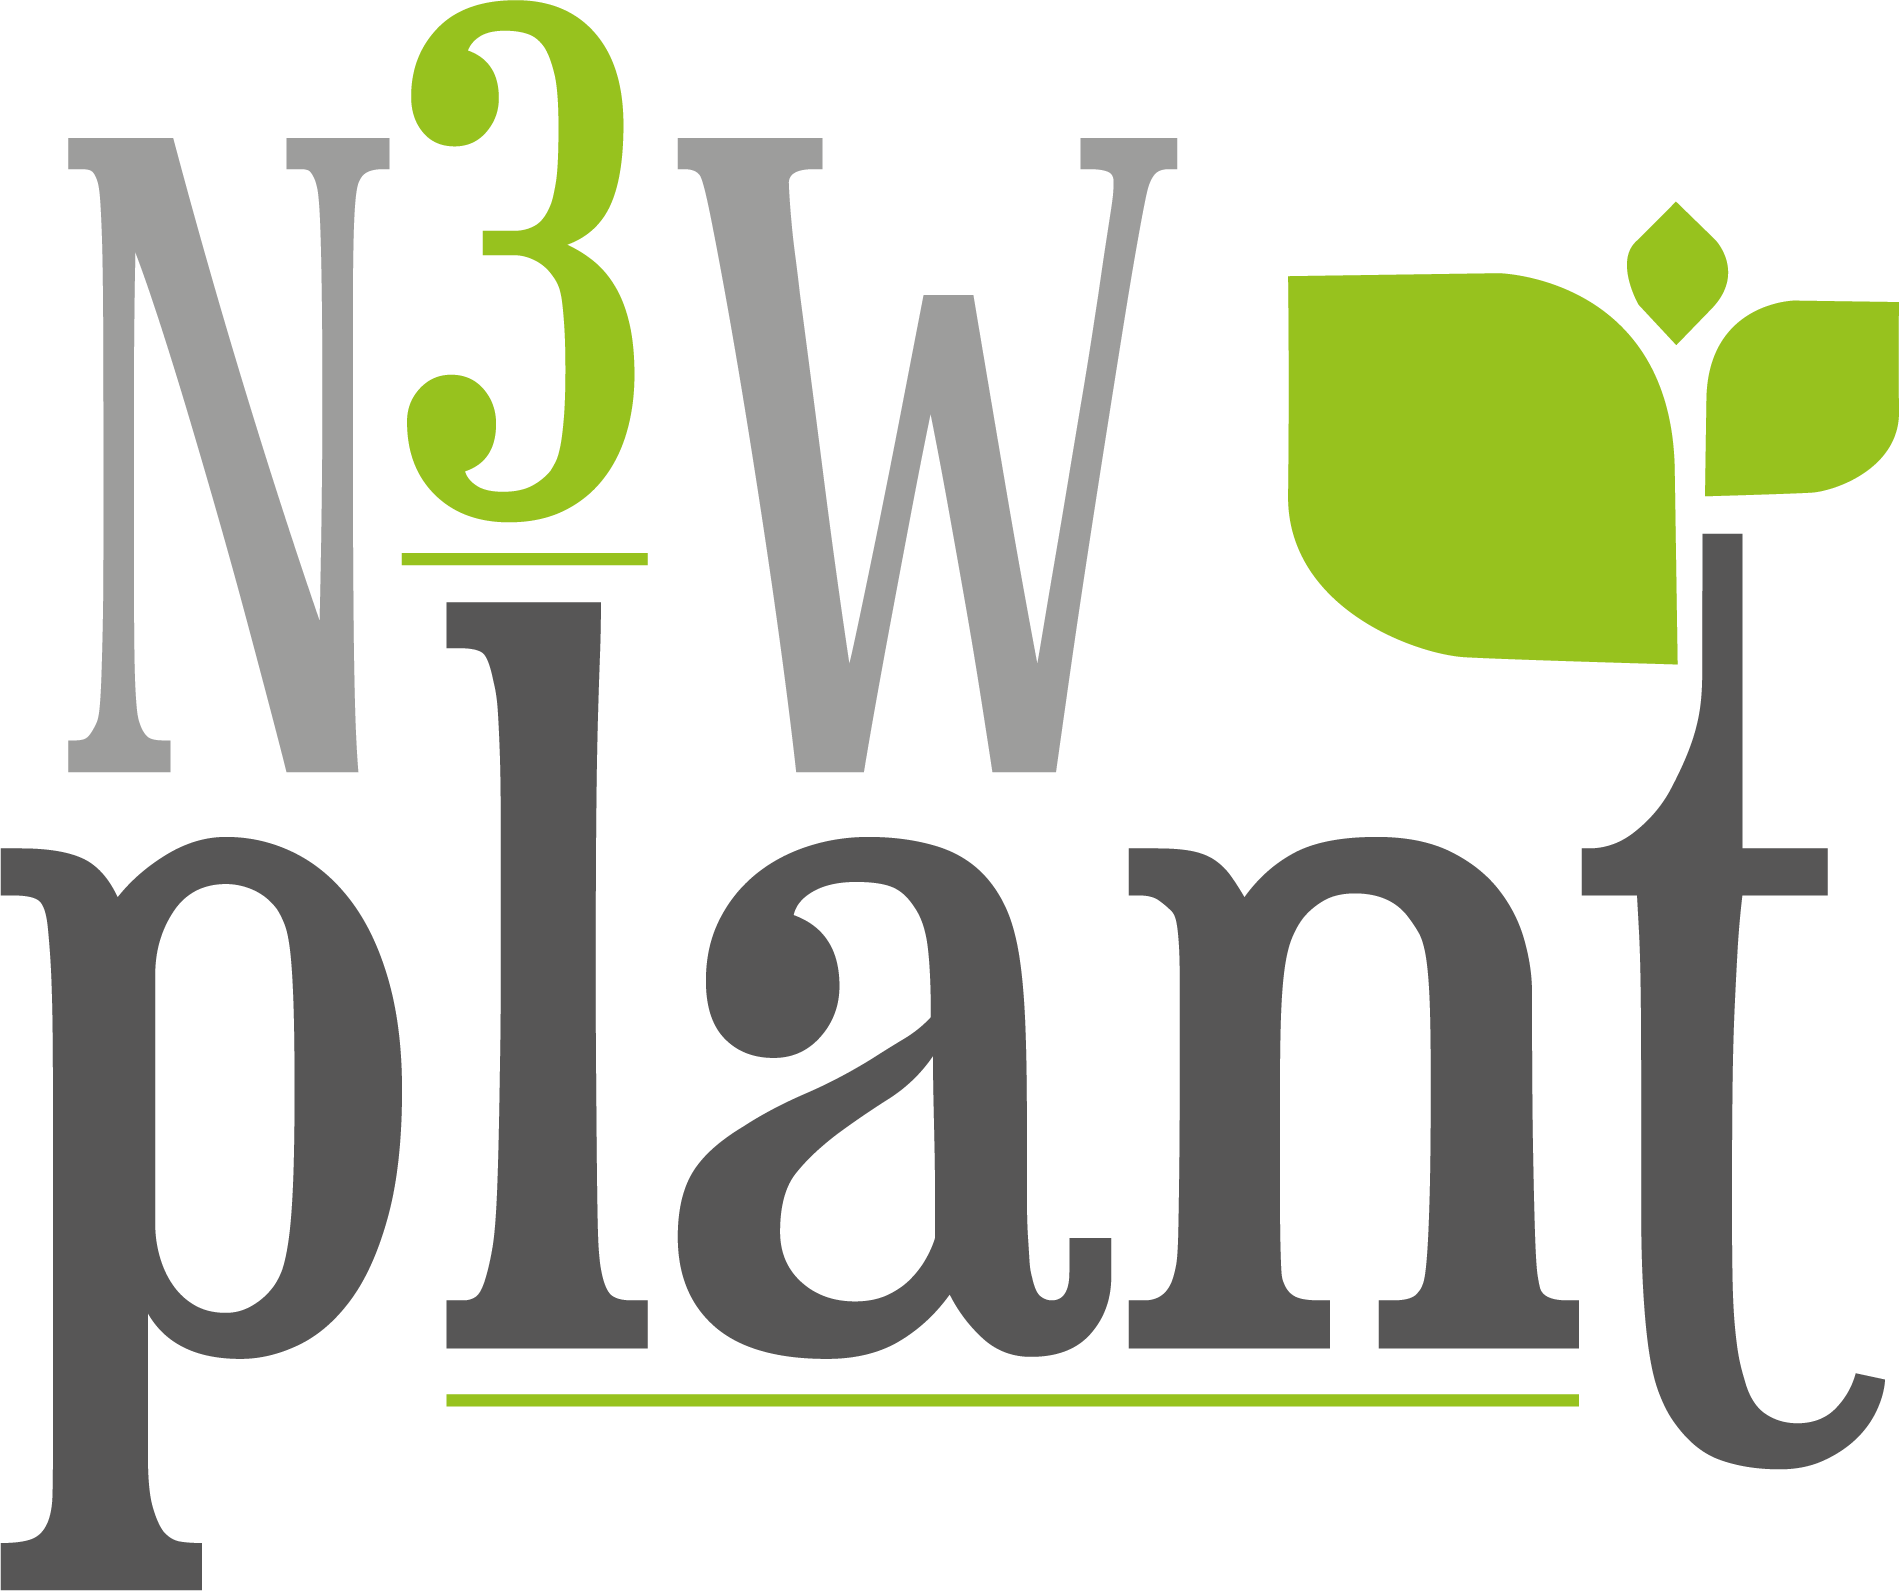 n3wplant.nl